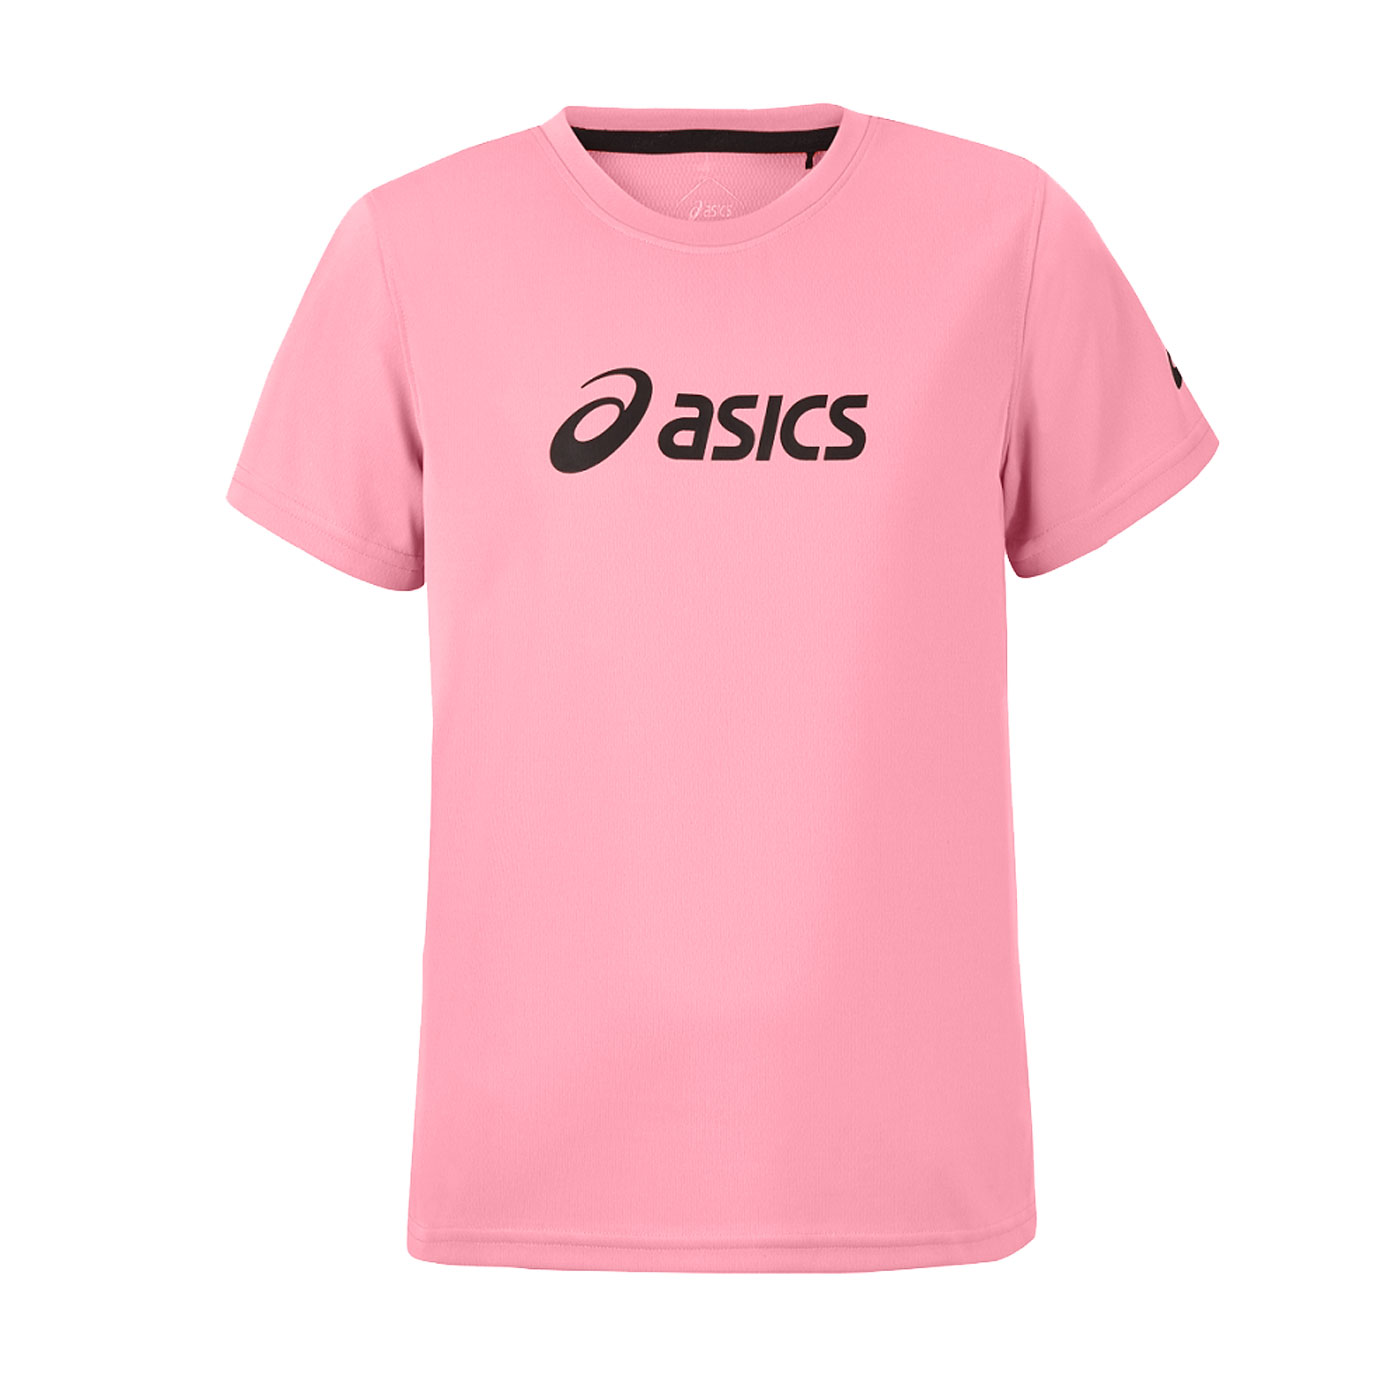 ASICS 兒童短袖T恤 2034A799-700 - 粉紅黑